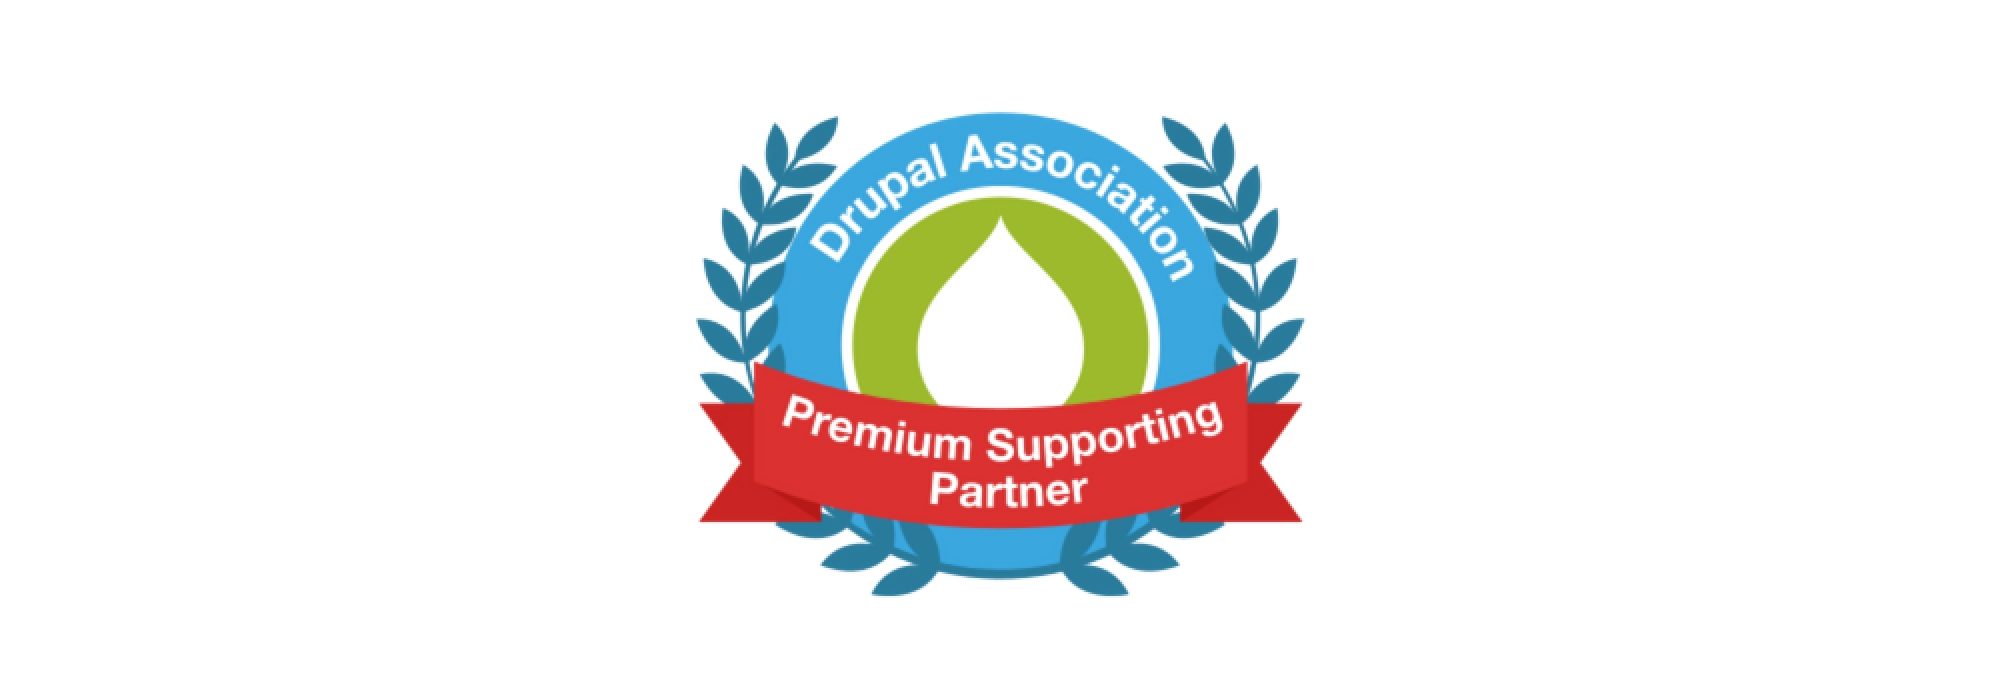 Drupal supporting partner badge